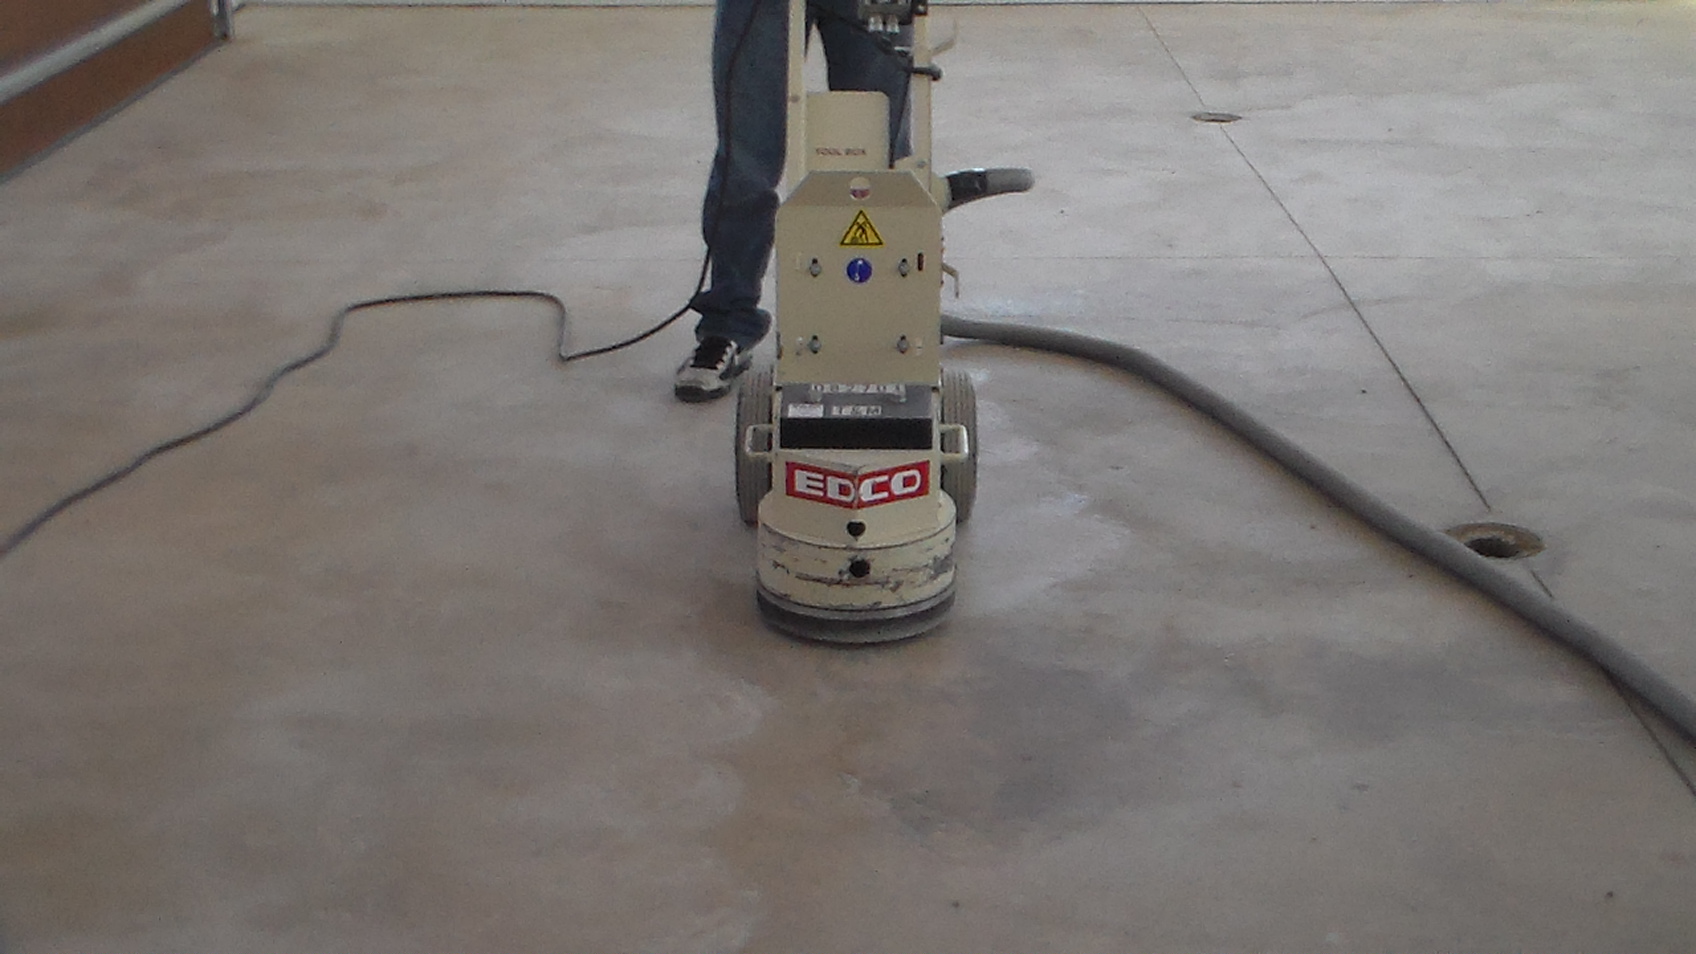 Grinding concrete floor.